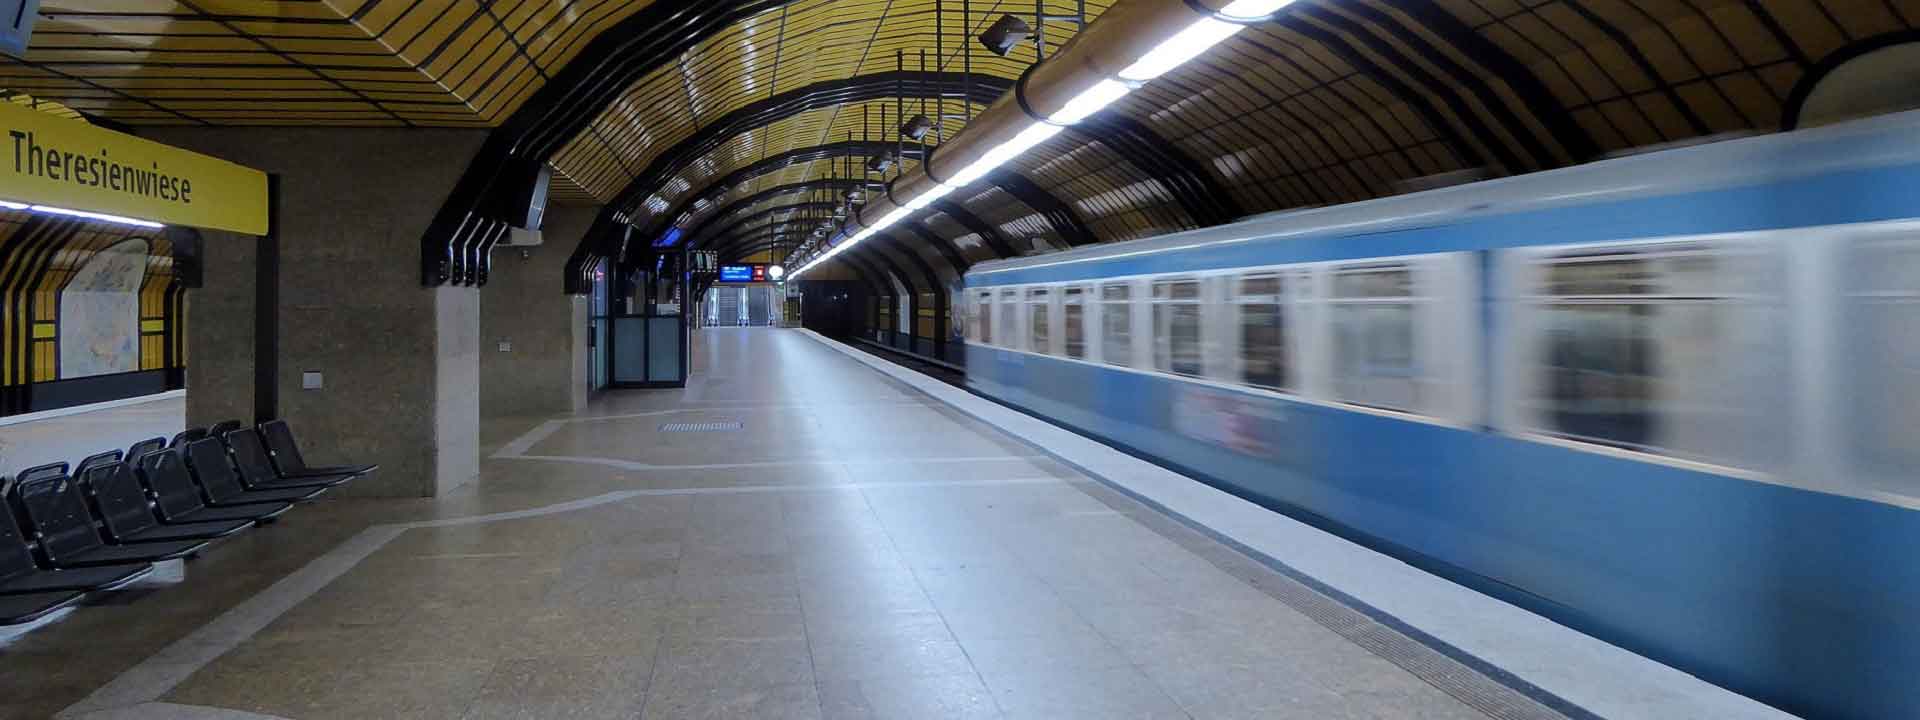 U Bahn fährt an der Station Theresienwiese ein